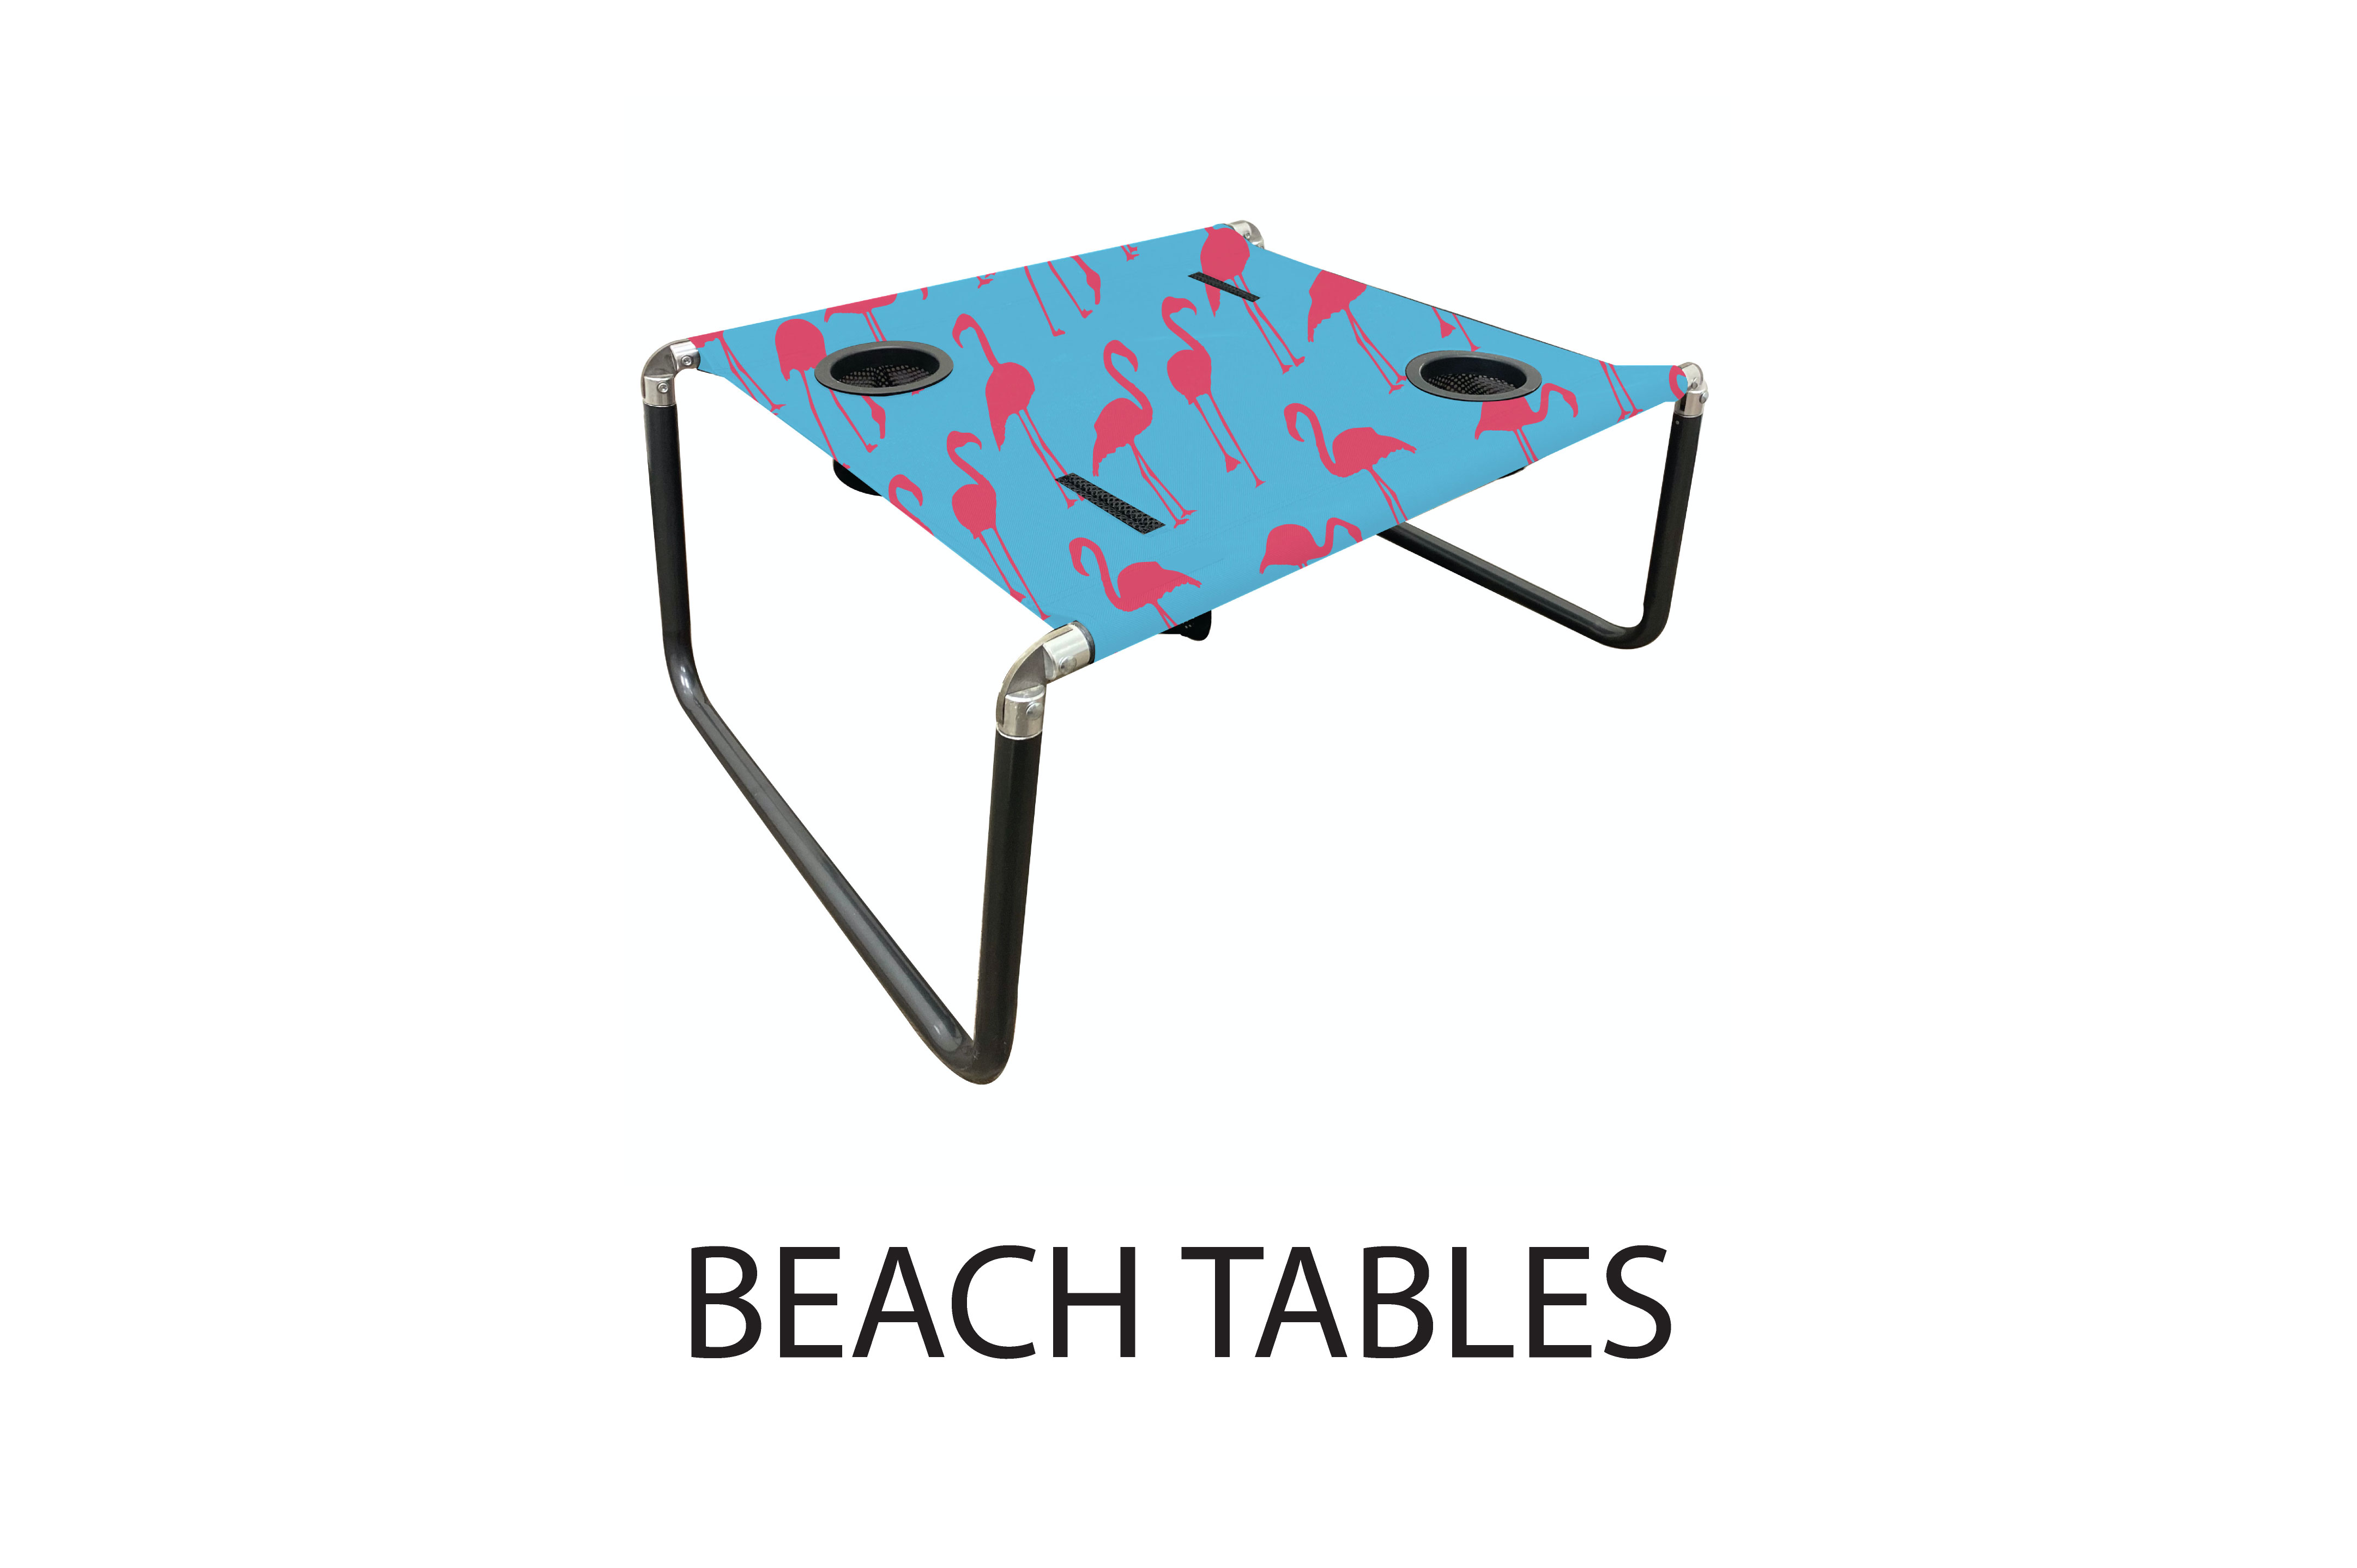  BEACH TABLES 